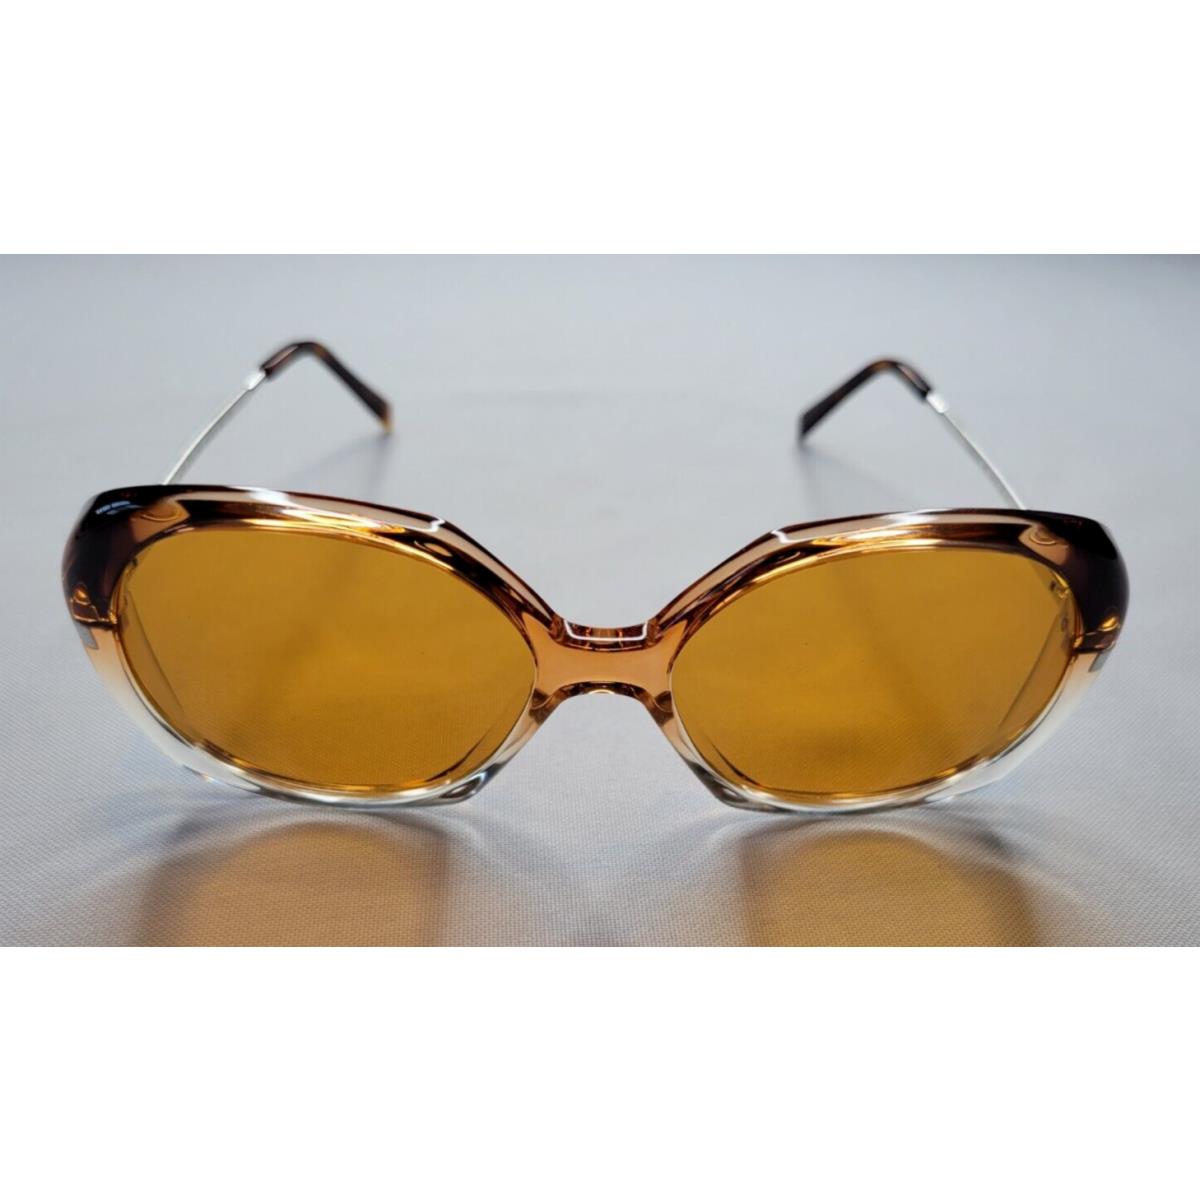 Celine sunglasses  - Brown/Silver Frame, Gray Lens 0